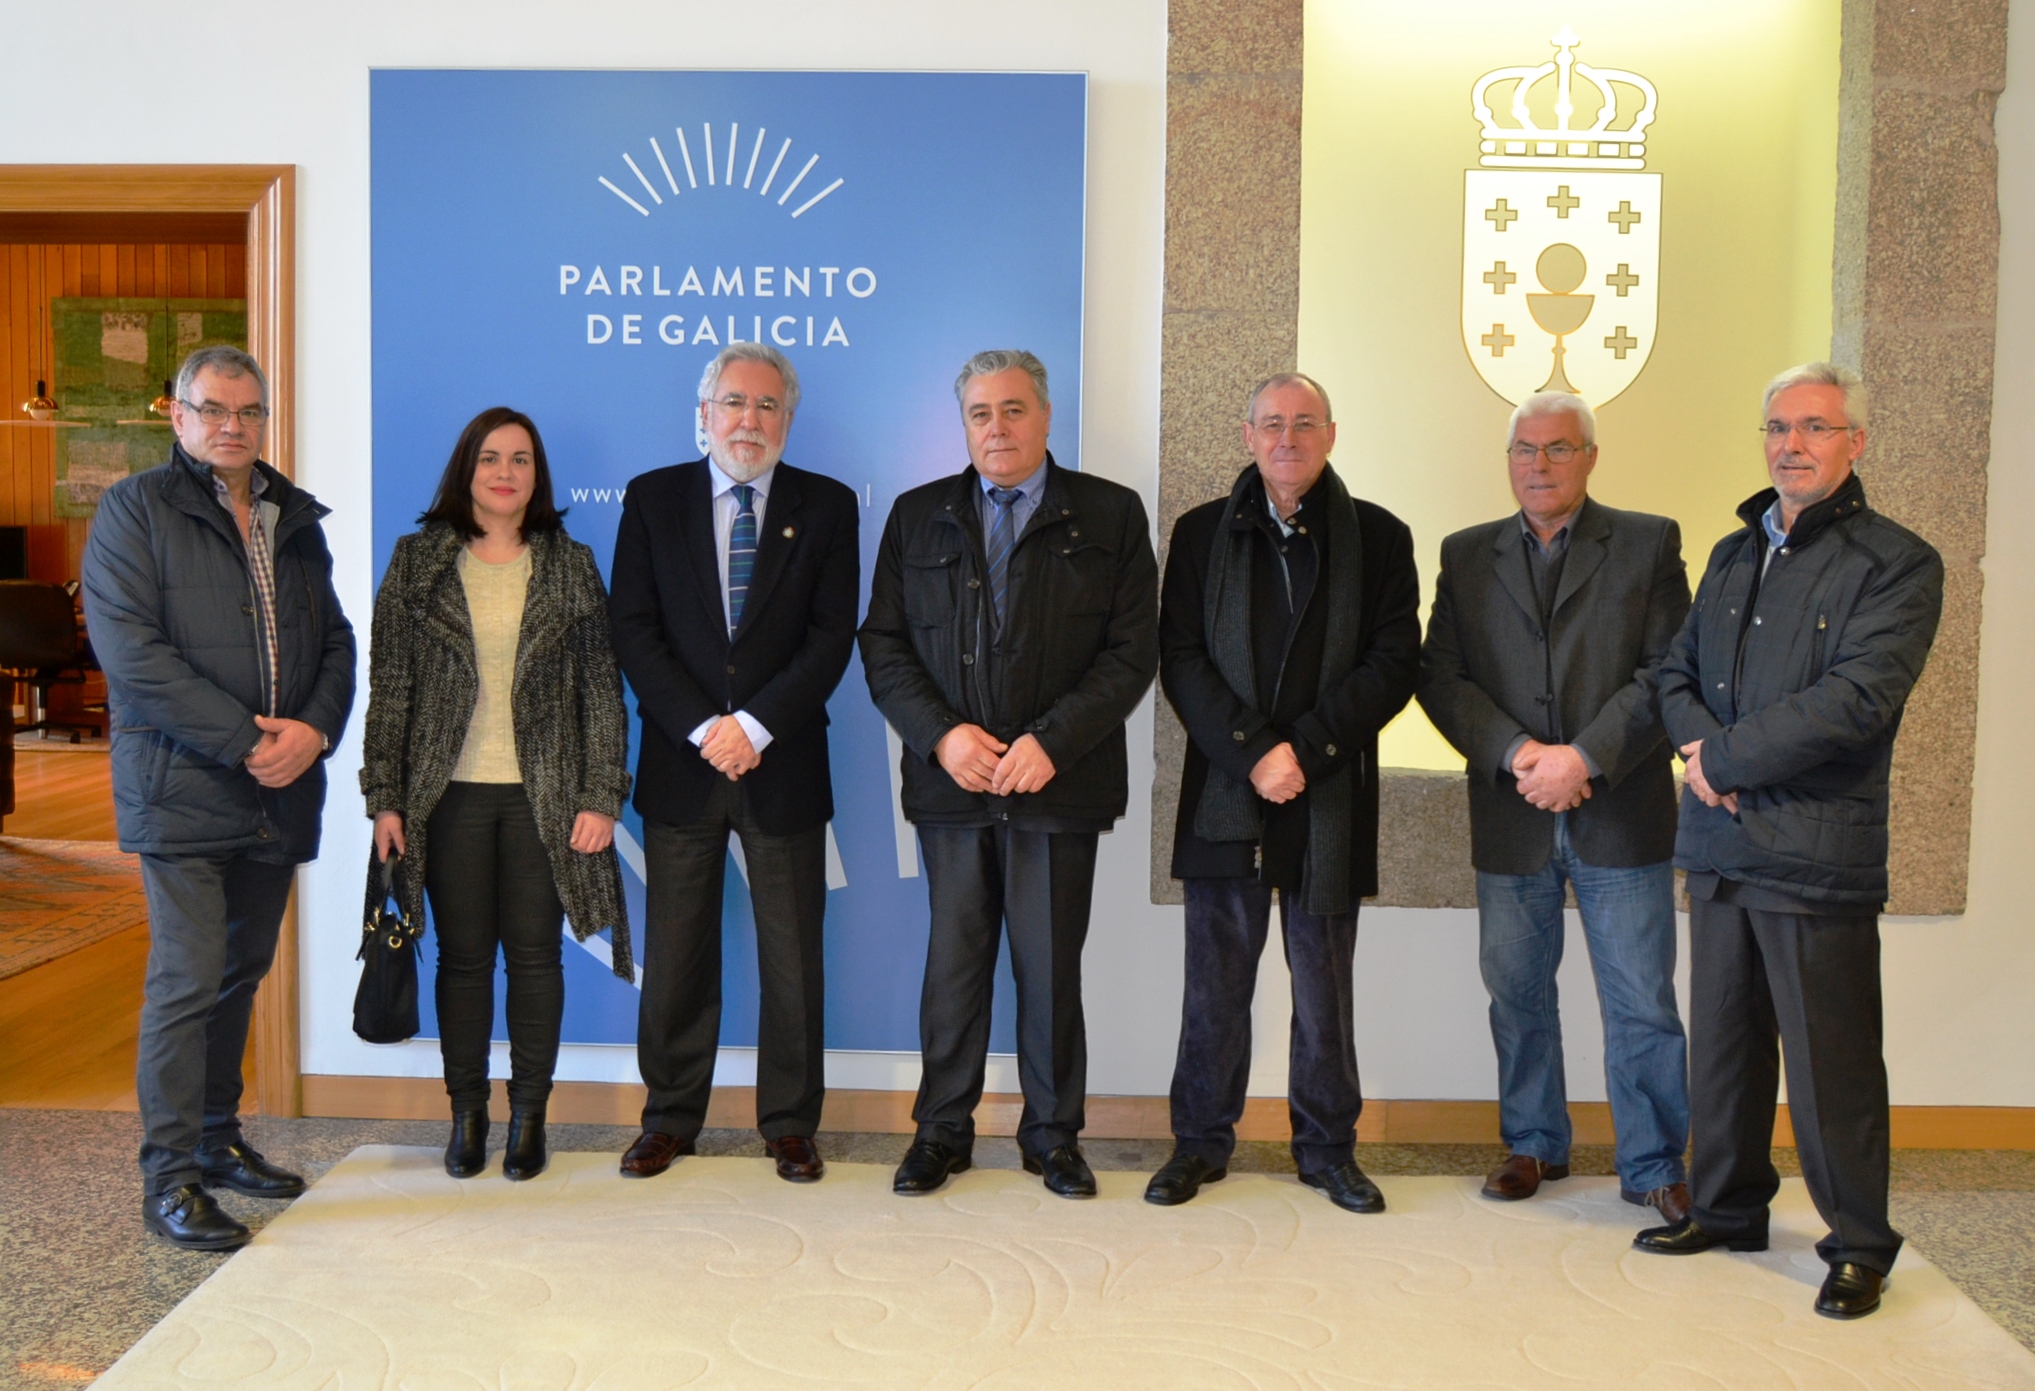 Integrantes da Corporación de Lobeira visitan o Parlamento de Galicia